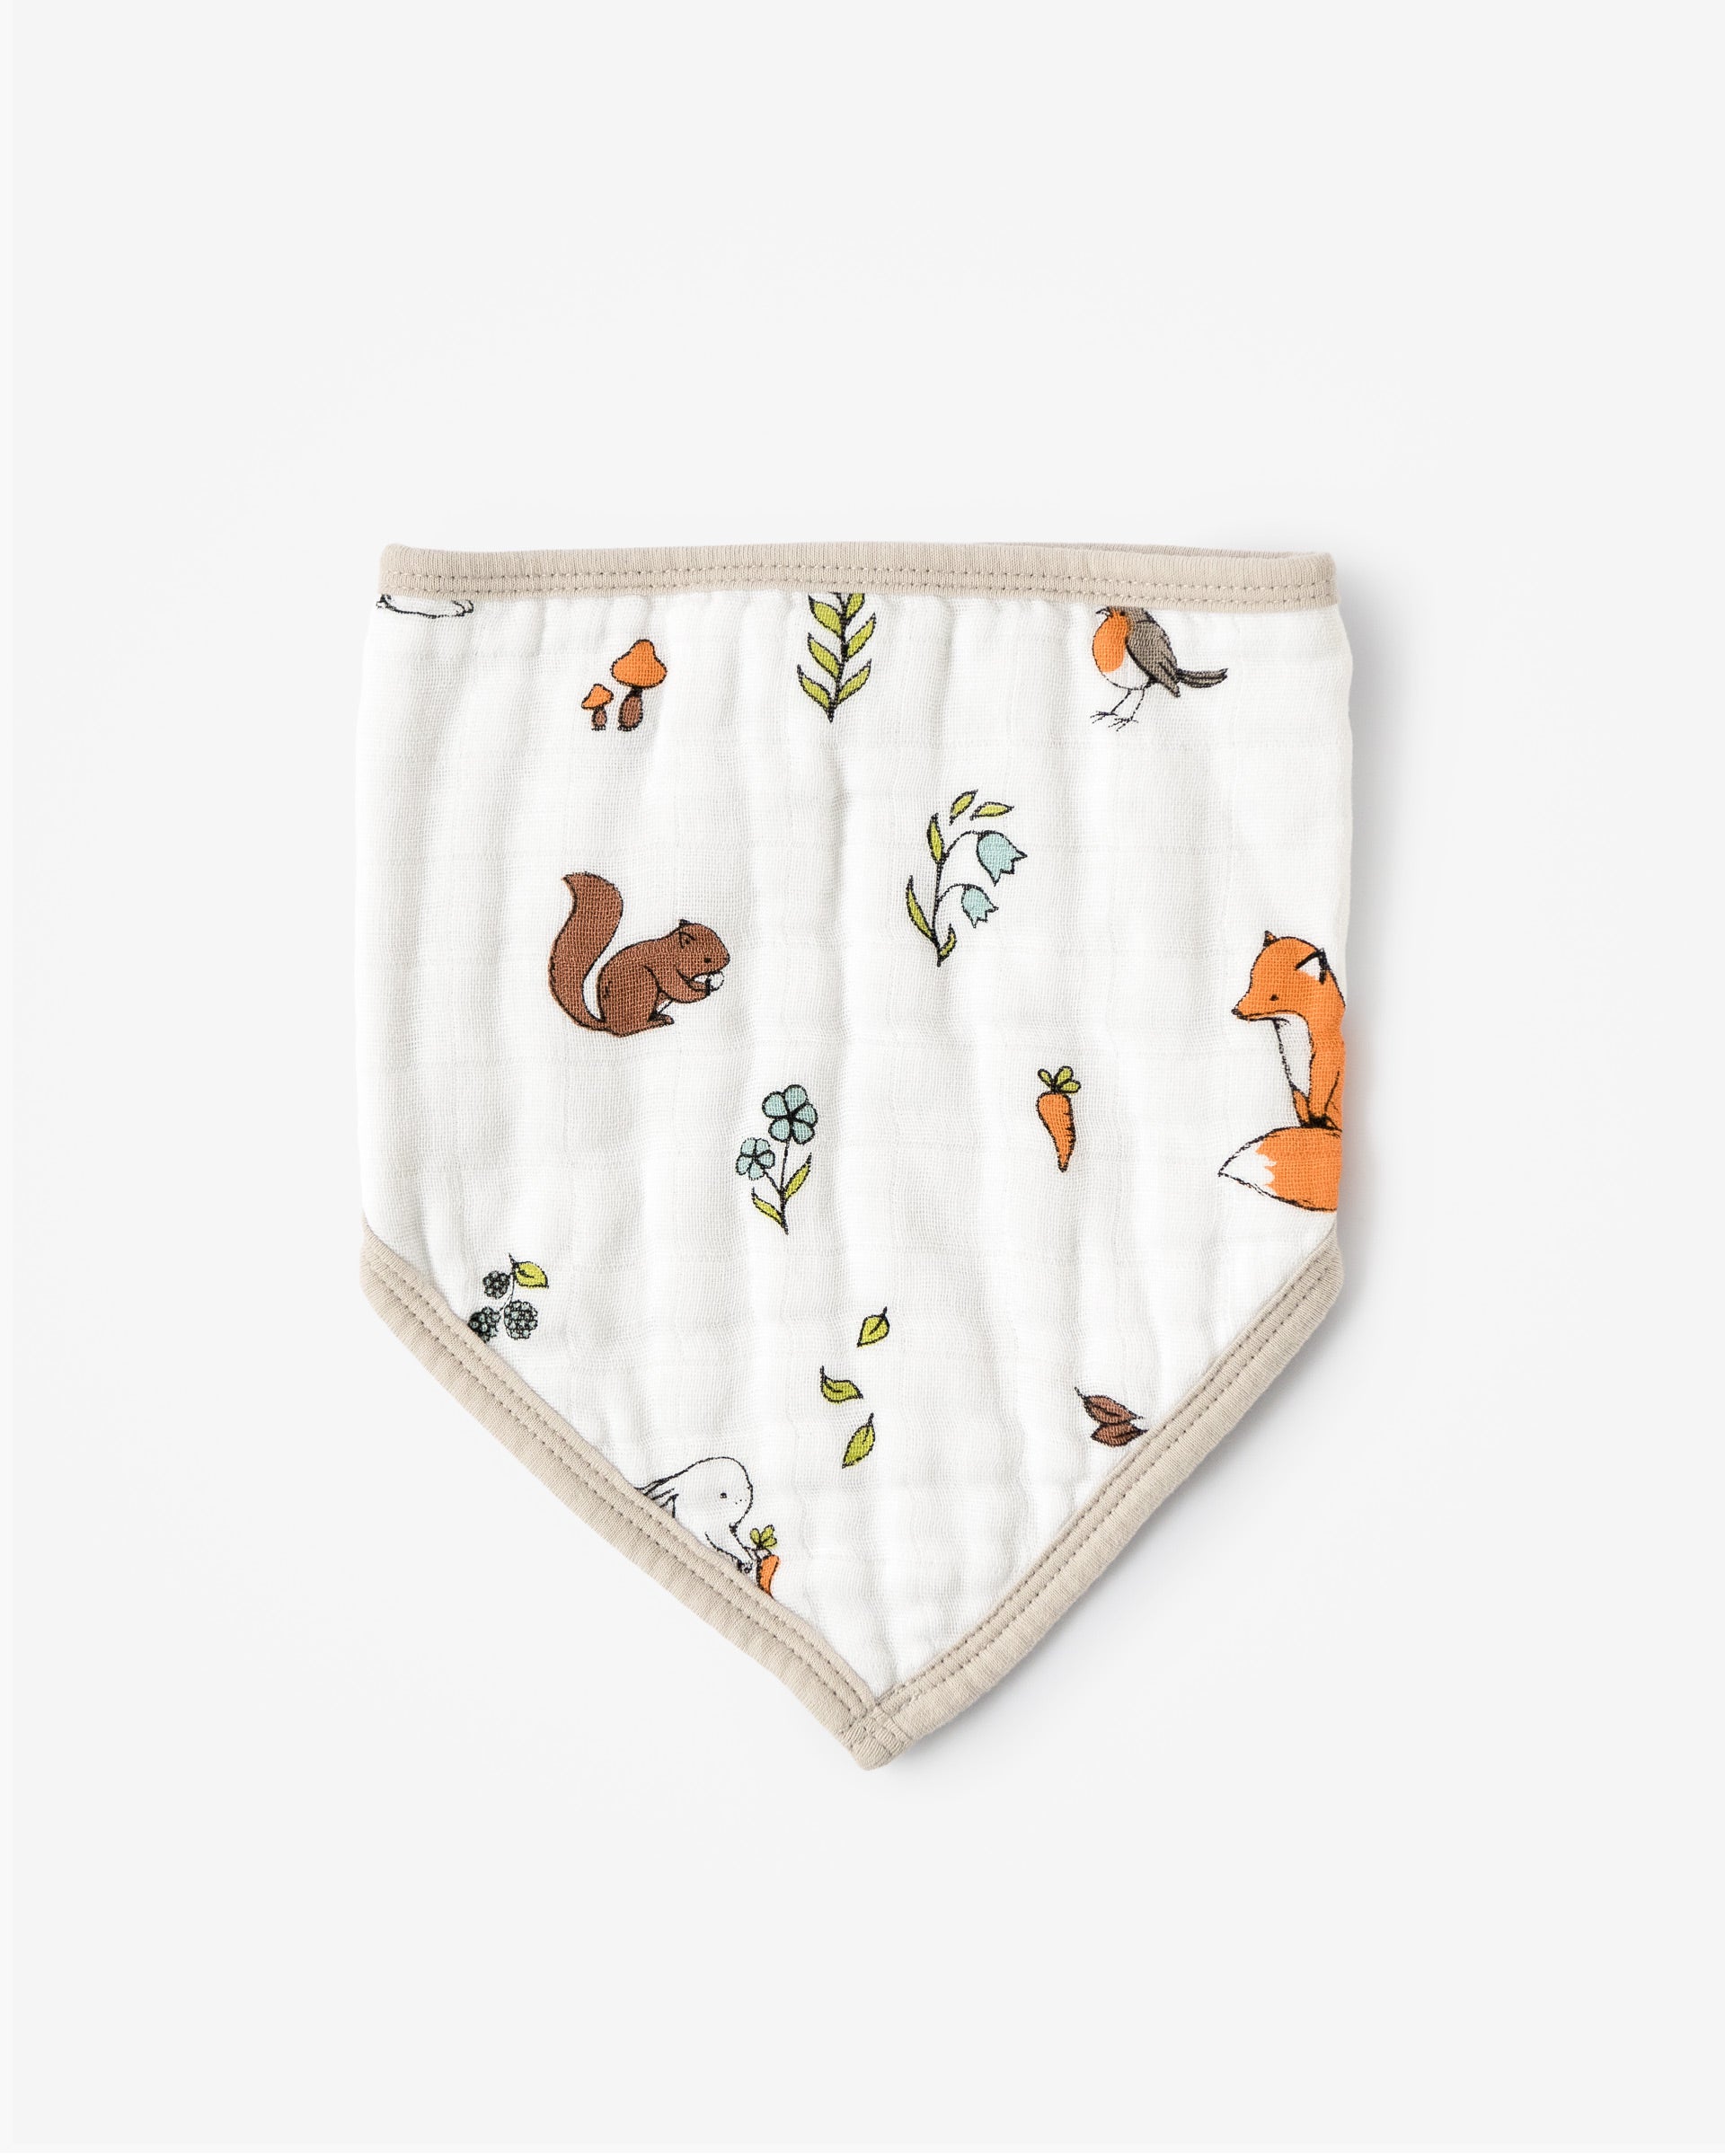 Organic baby bandana bib with woodland pattern